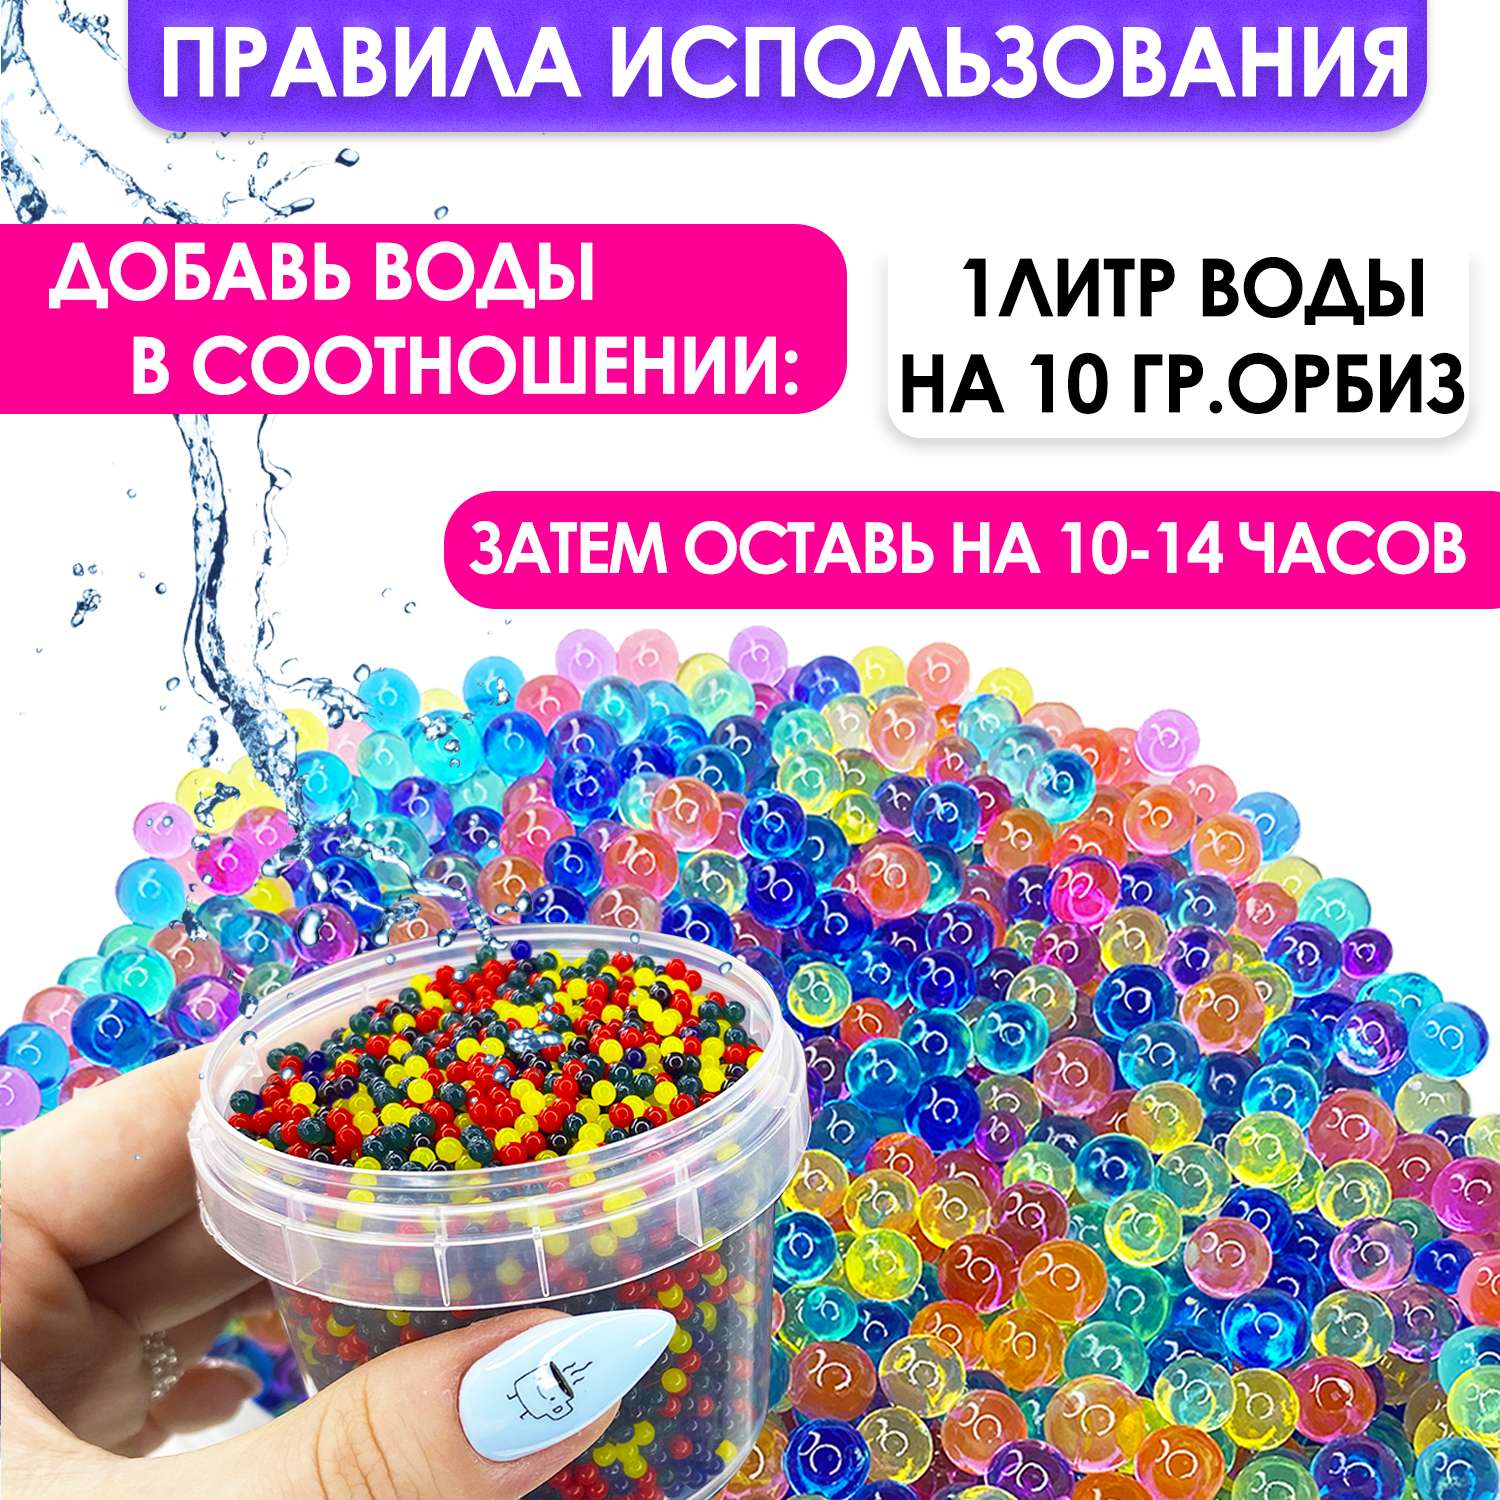 Орбизы разноцветные для детей MINI-TOYS Гидрогелевые шарики Orbeez 100 грамм - фото 2